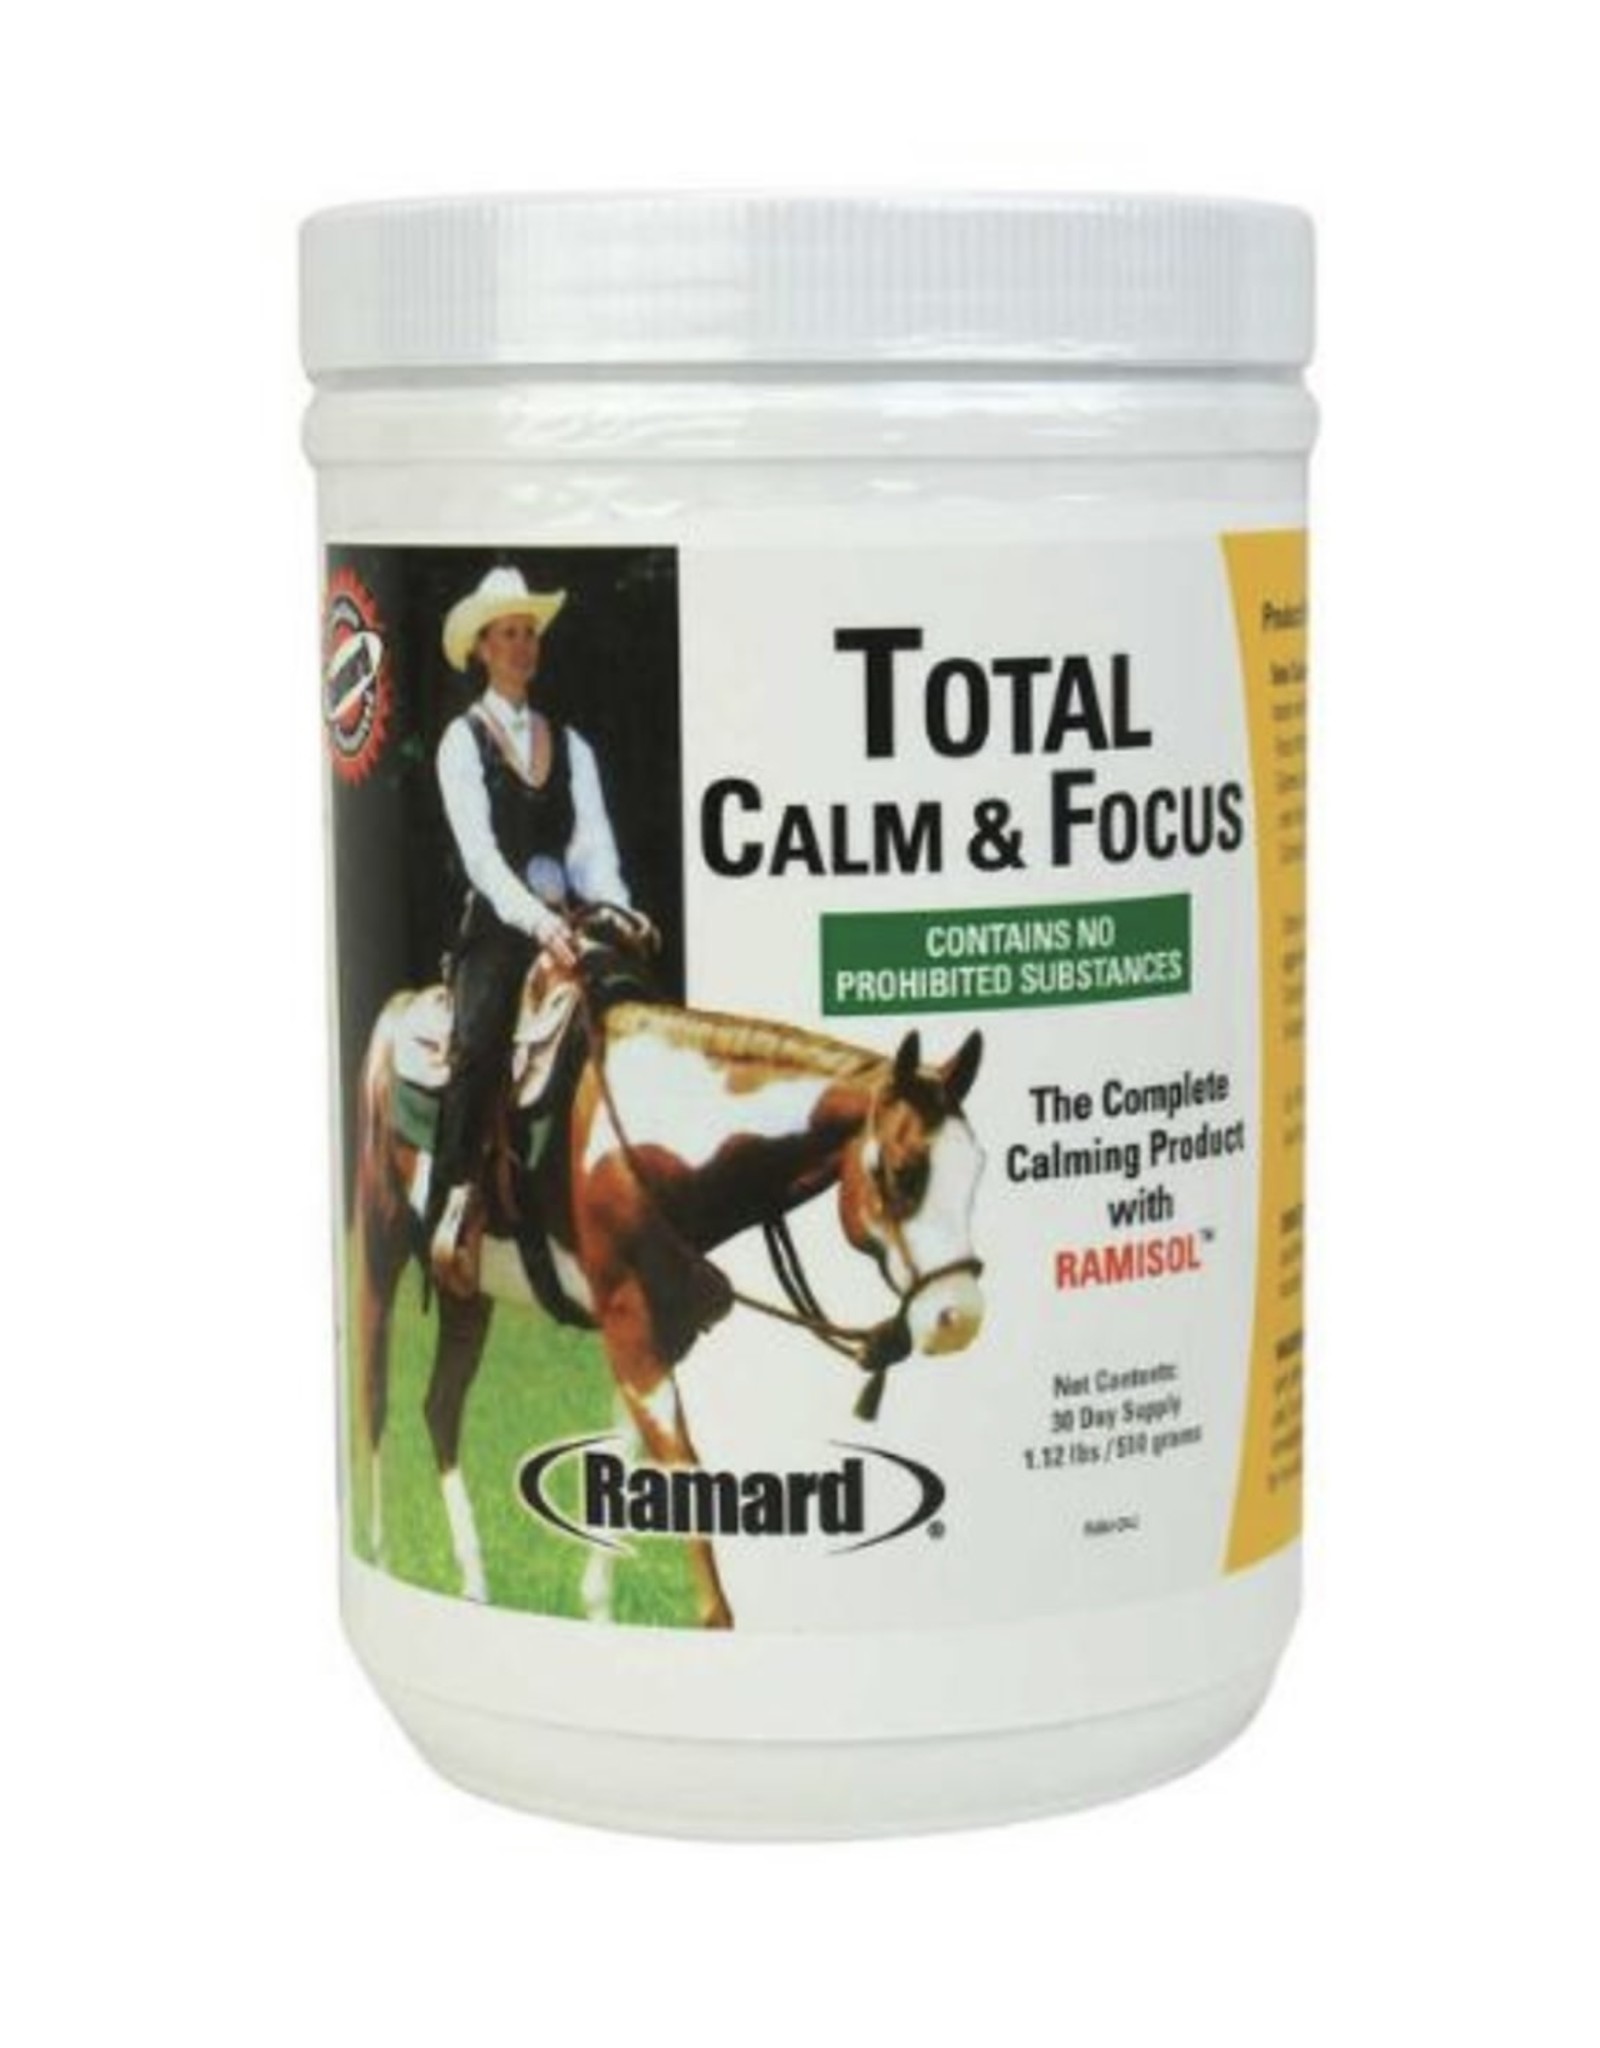 Total Total Calm & Focus 1.12lb Jar